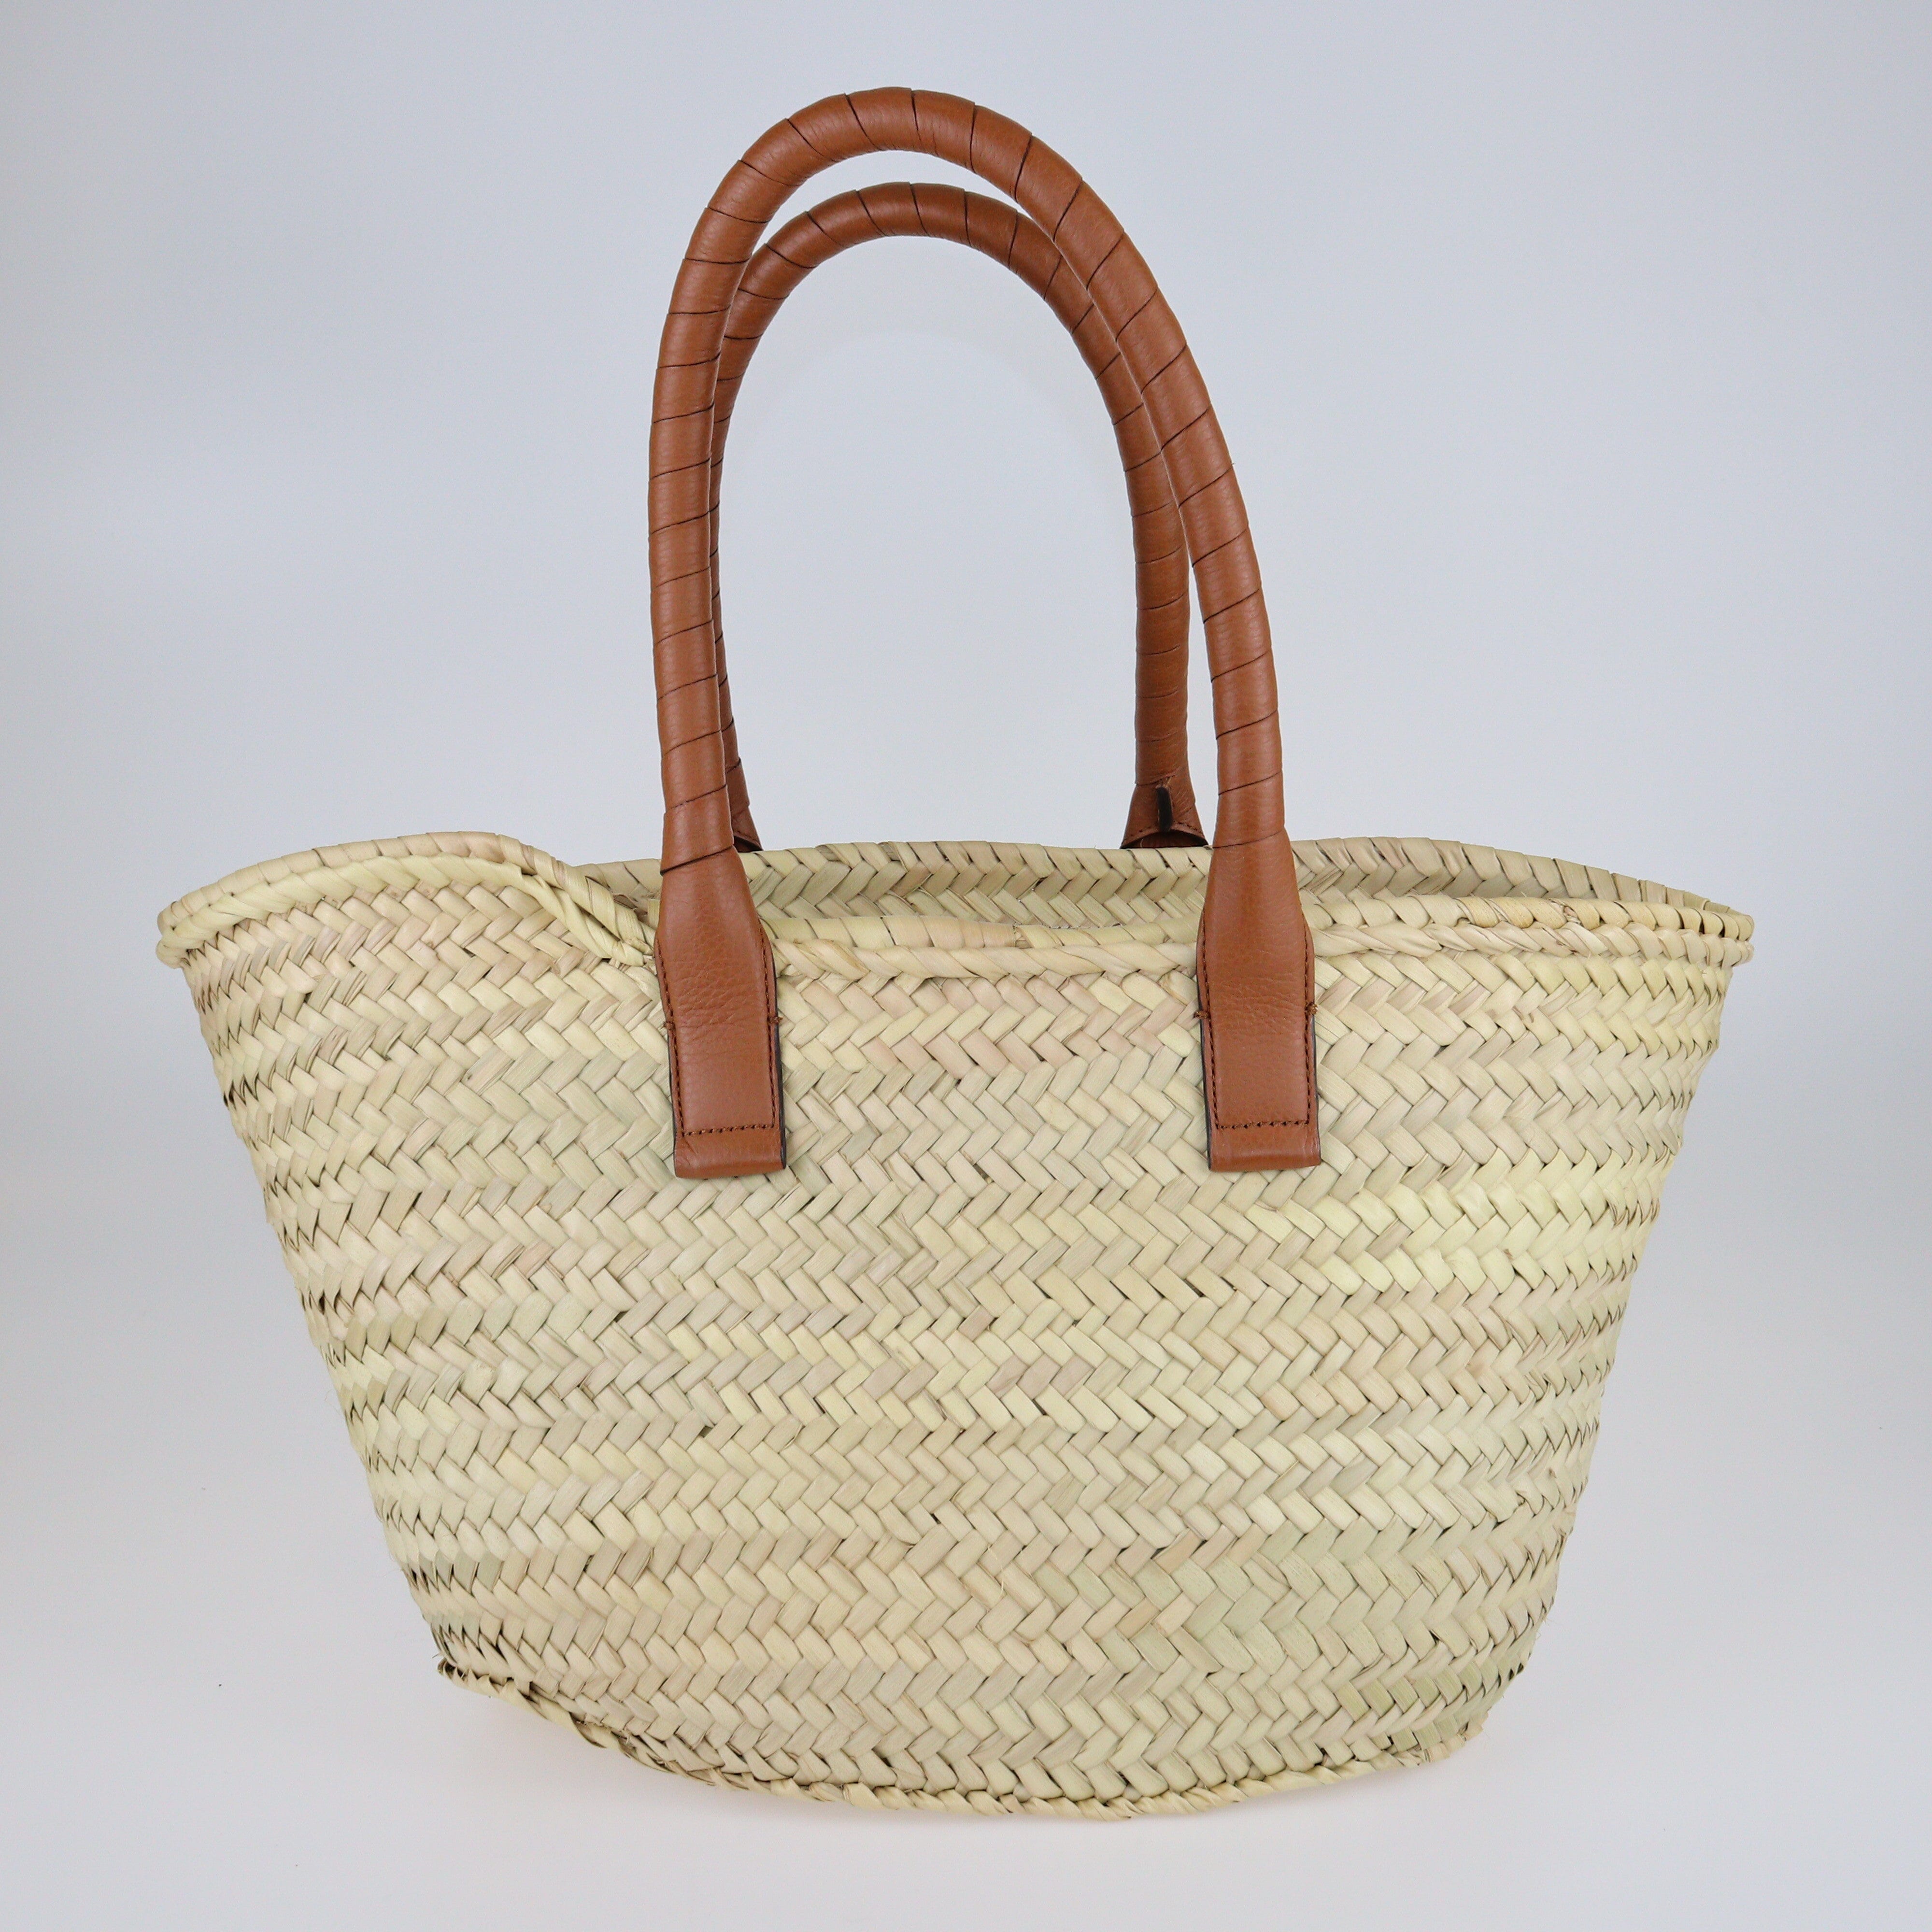 Beige/Brown Medium Marcie Basket Bag Bags Chloe 